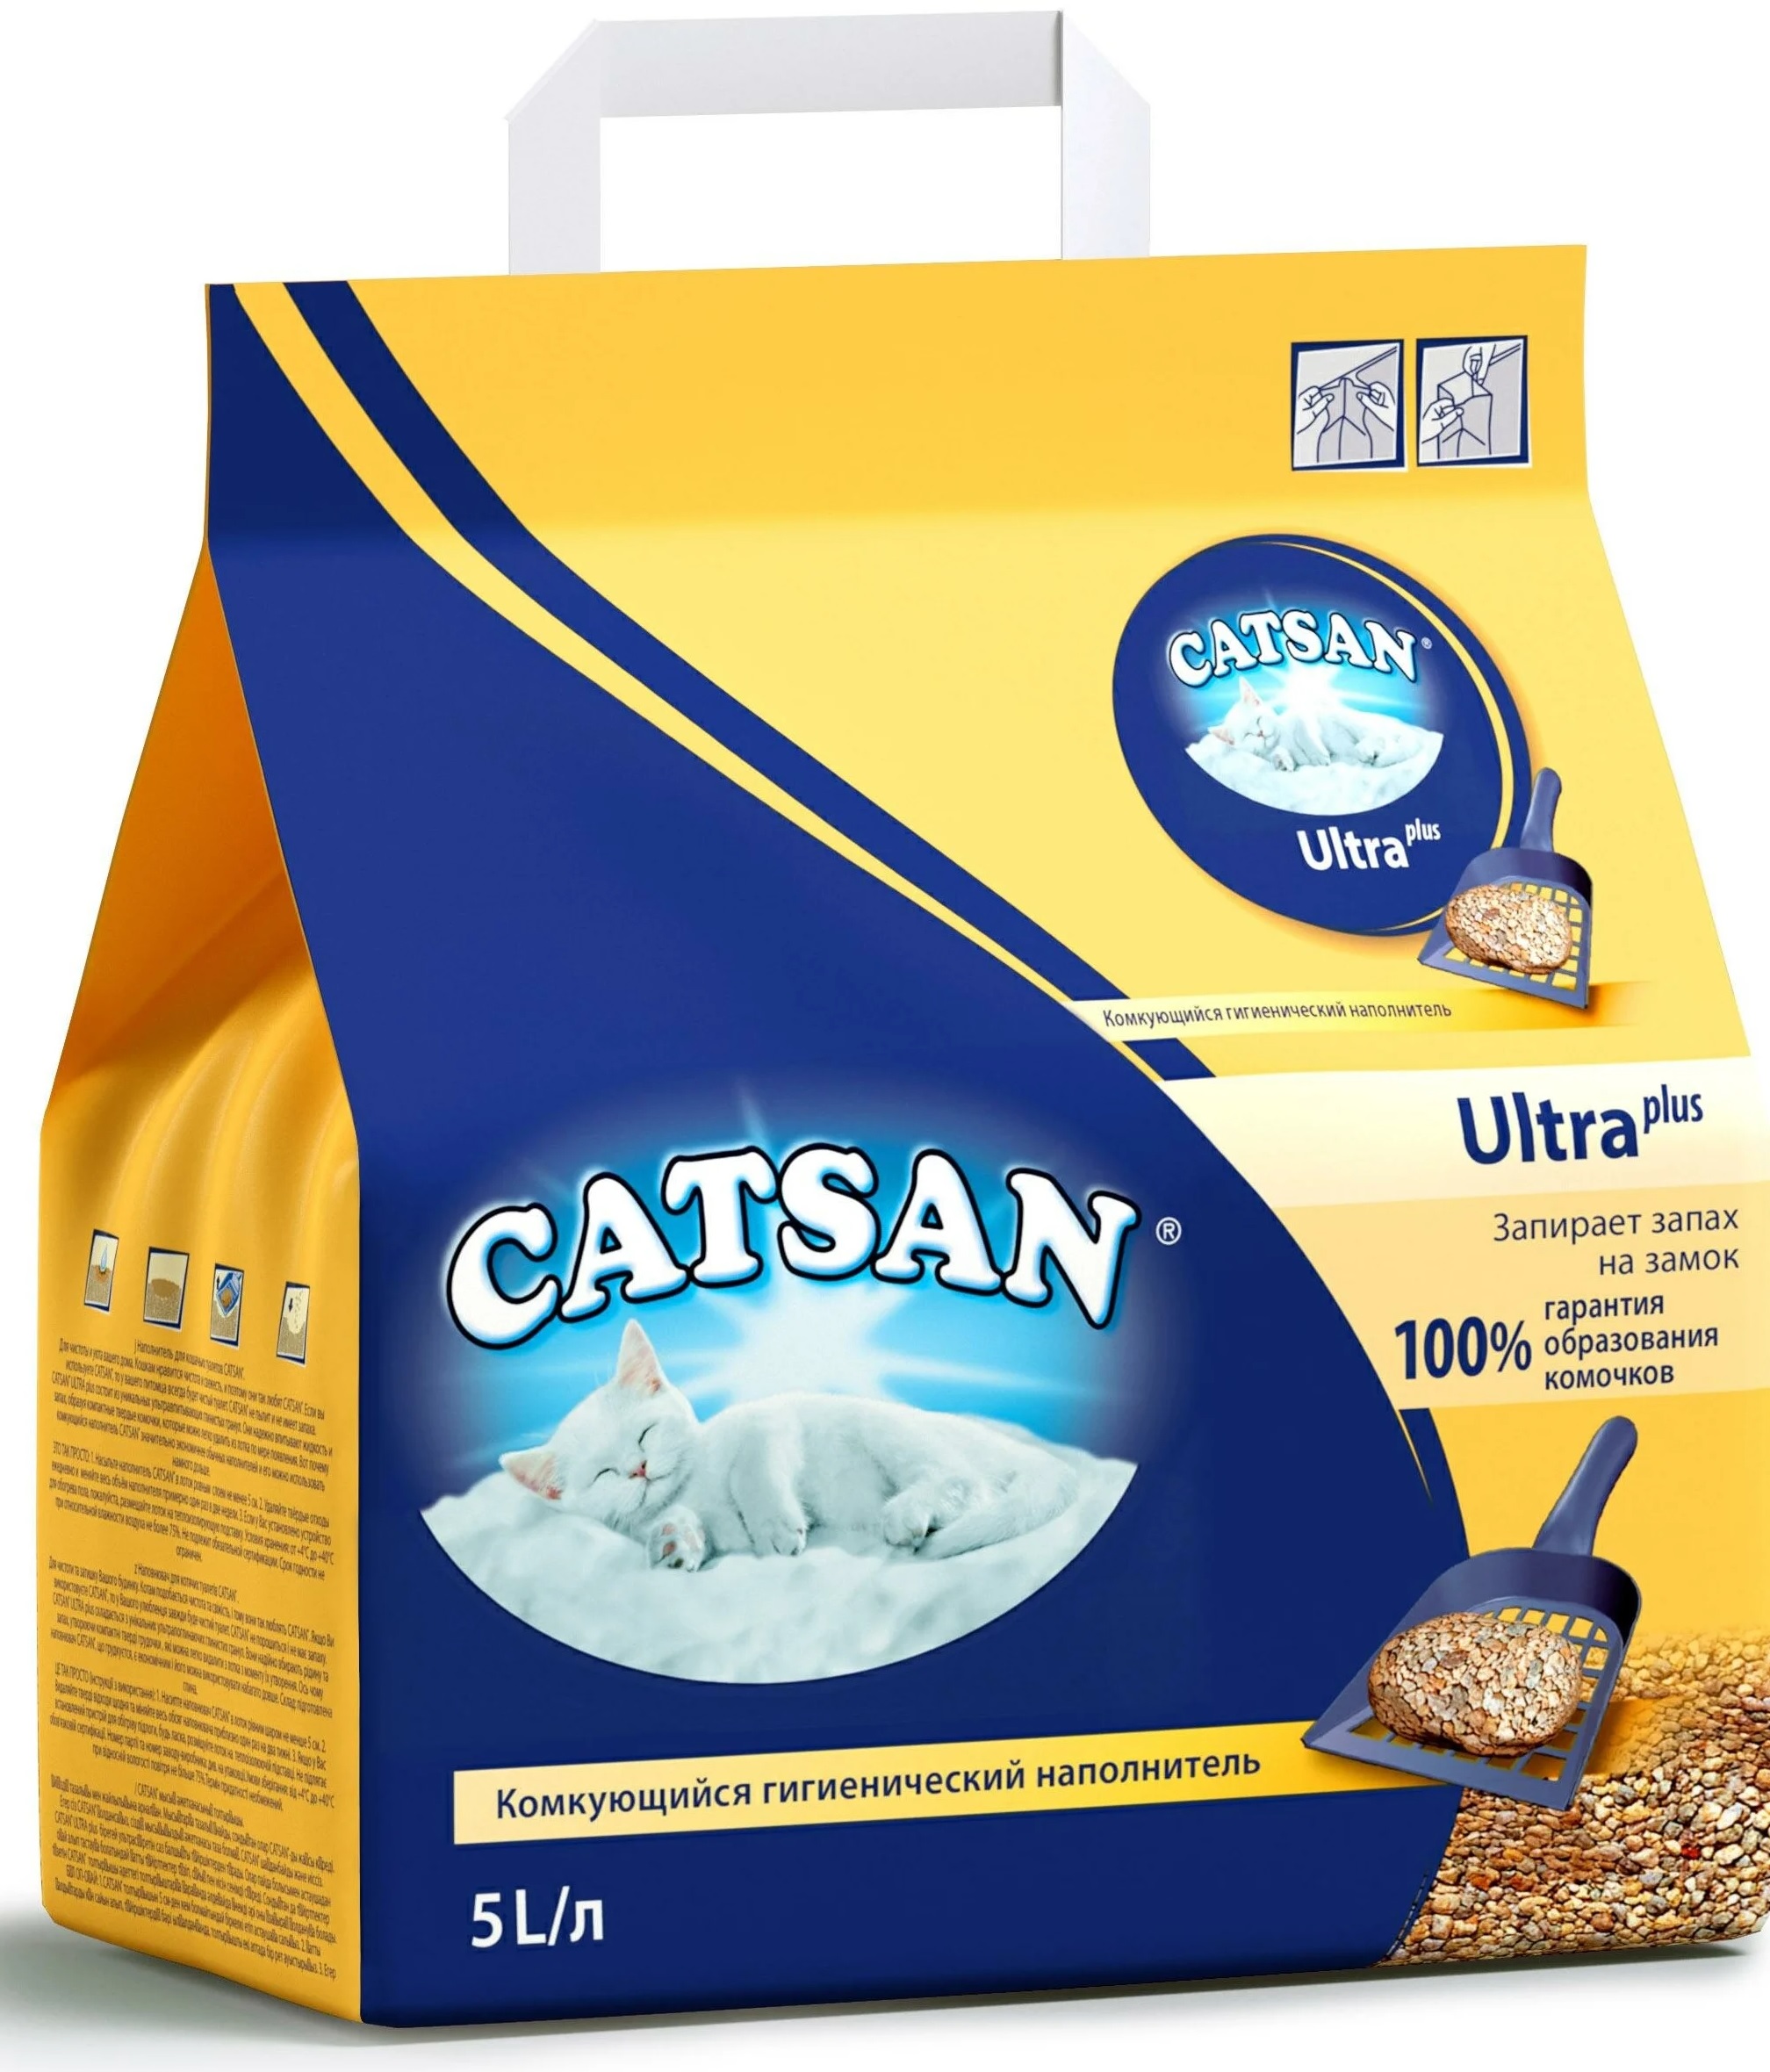 Наполнитель комкующийся для кошачьего туалета Catsan ultra plus 5 л 5.2 кг